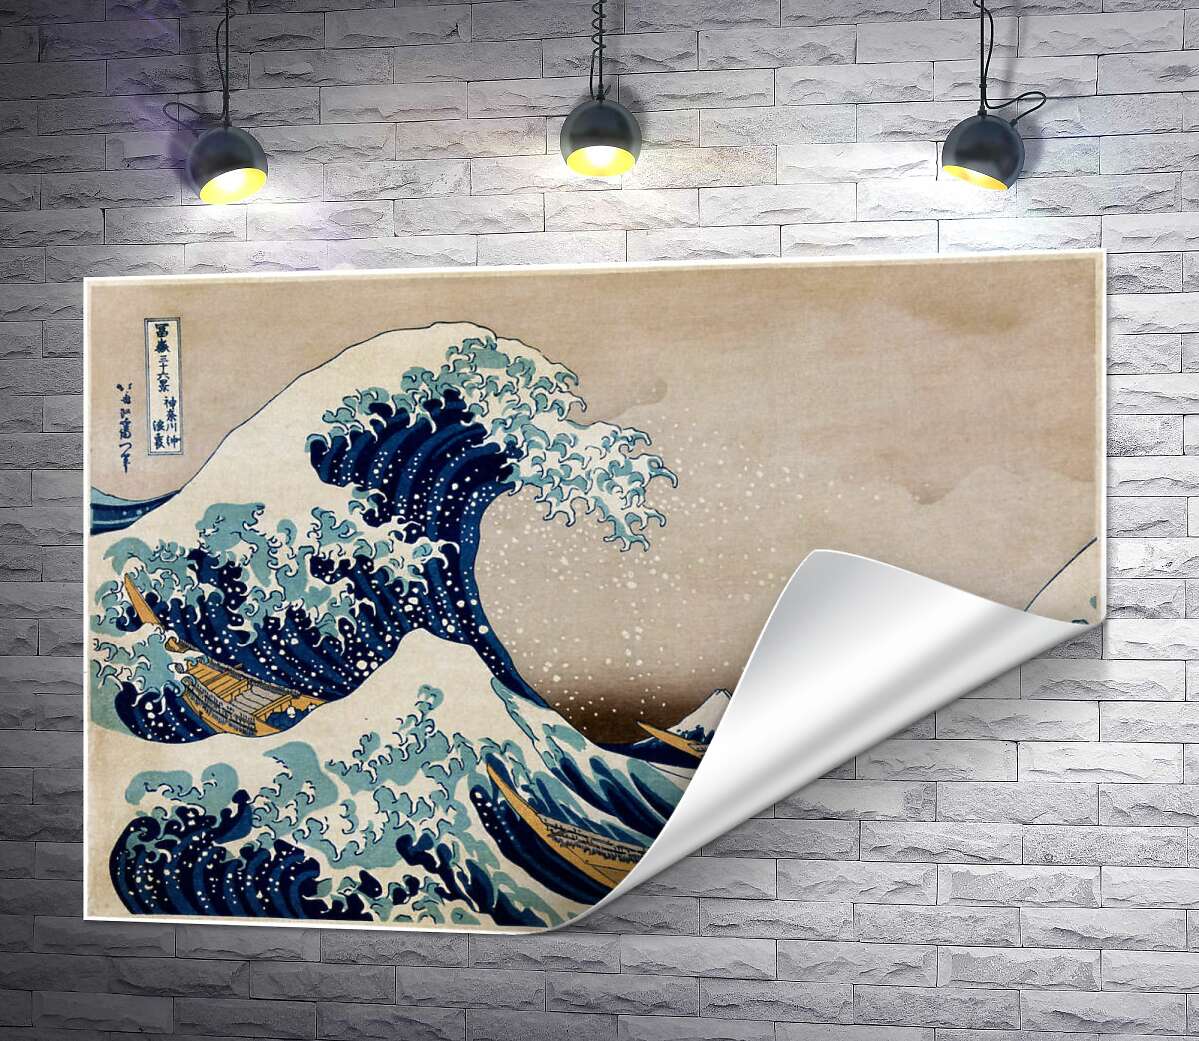 печать Большая волна (The great wave) - Кацусика Хокусай (Katsushika Hokusai)